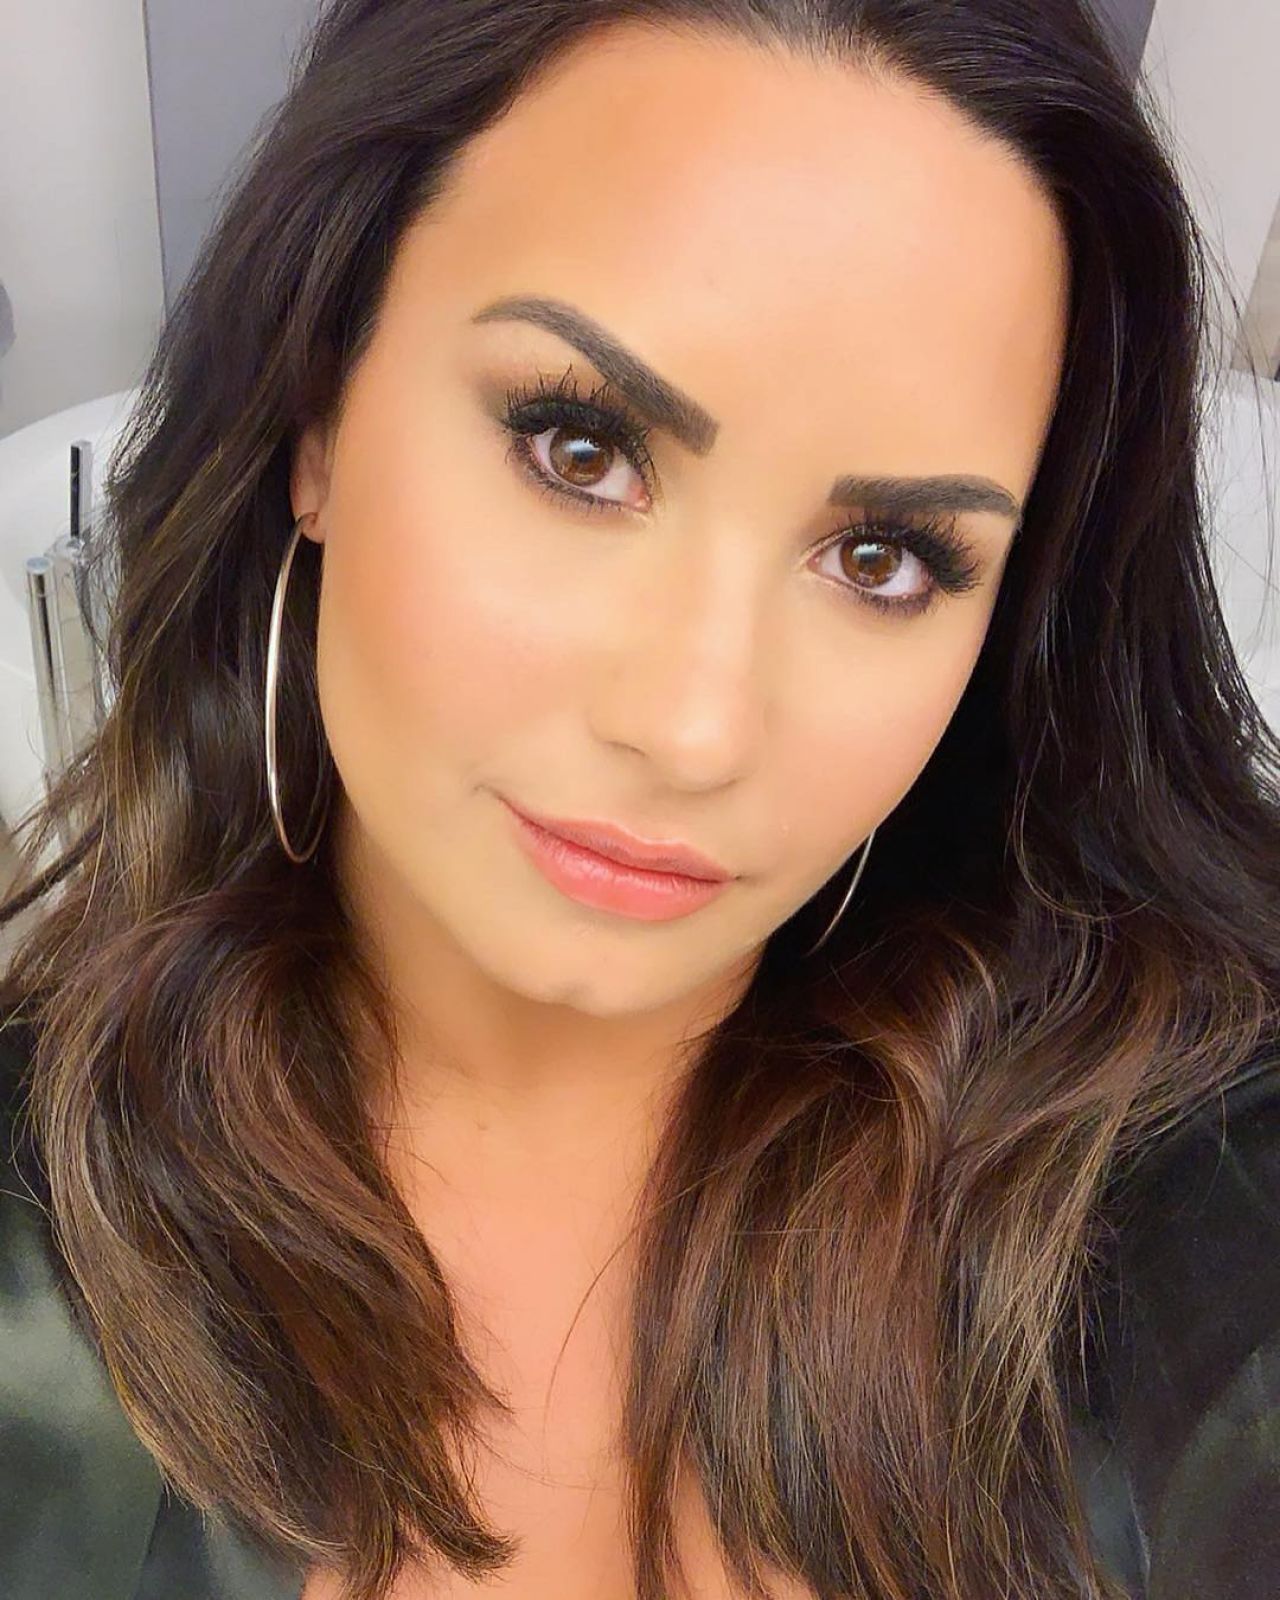 Demi Lovato - Personal Pics 04/16/20191280 x 1600